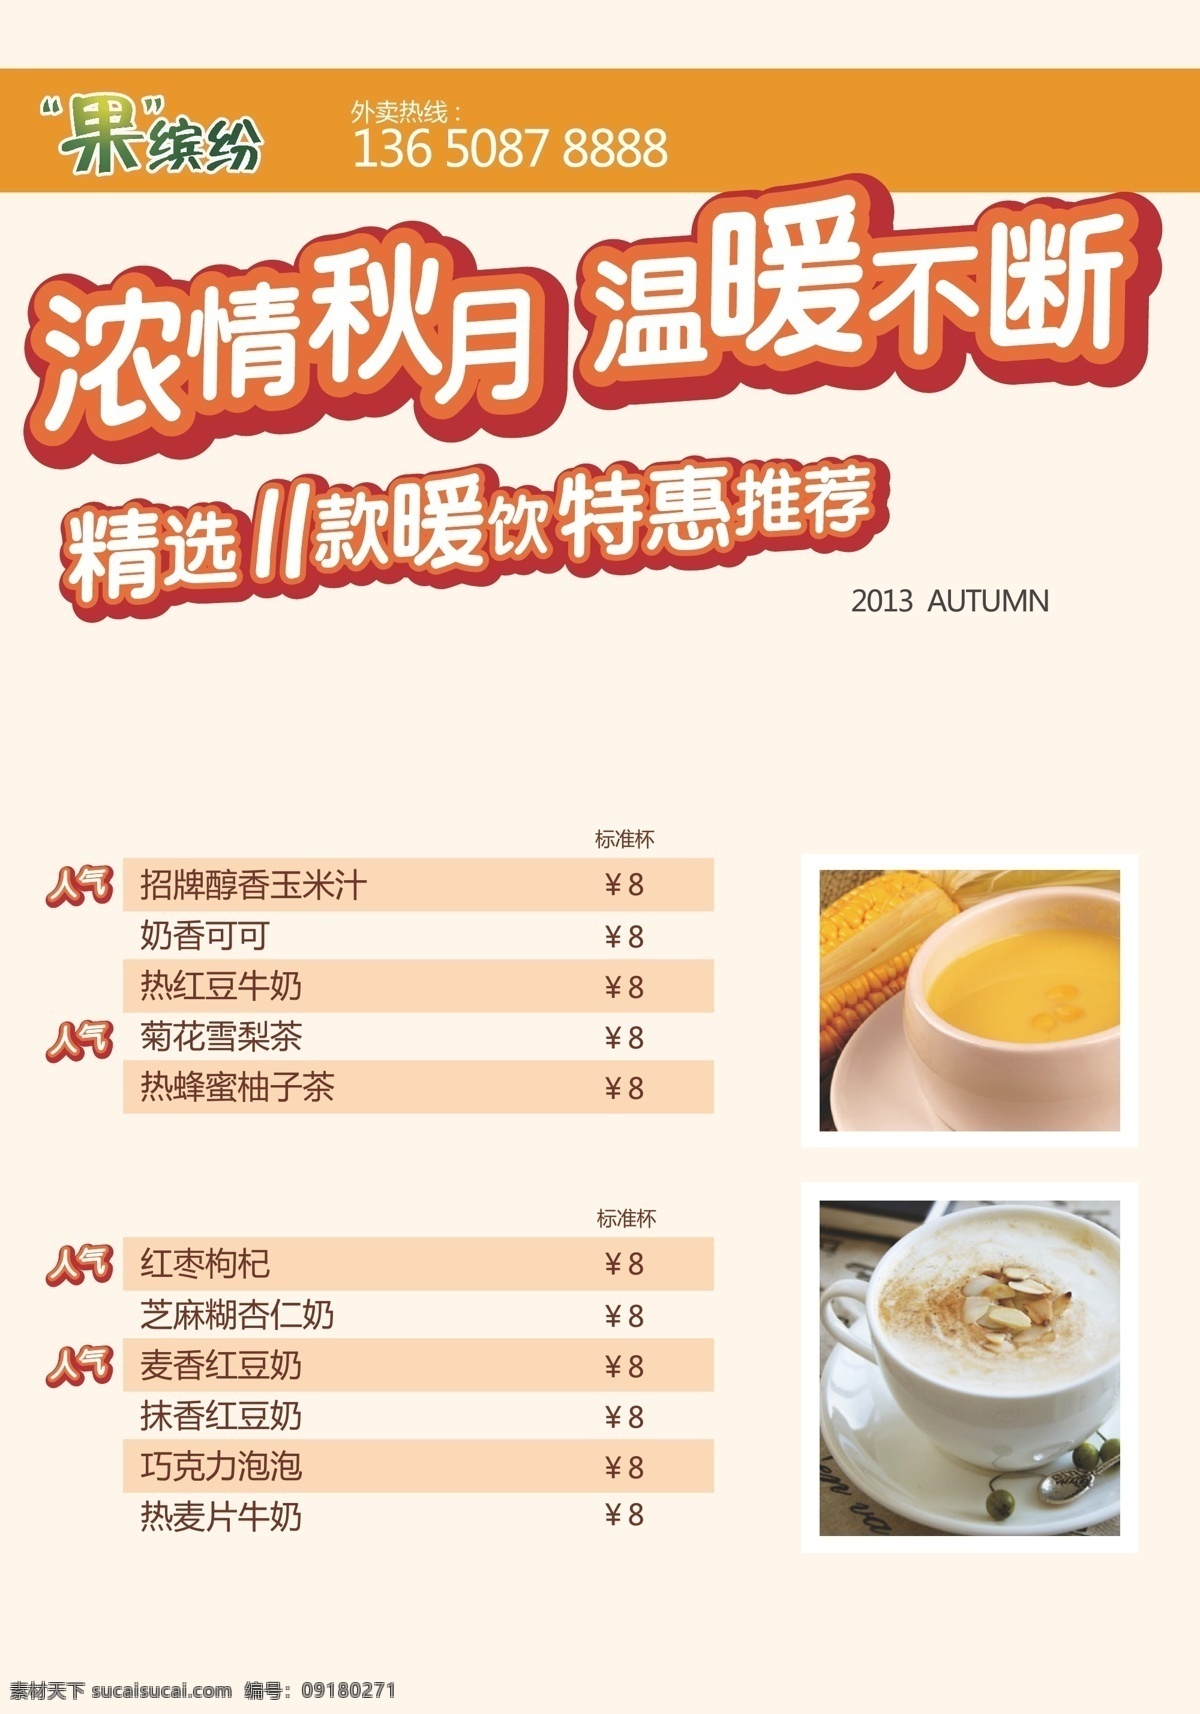 秋季 奶茶 菜单 海报 广告 价格表 产品 热饮 矢量